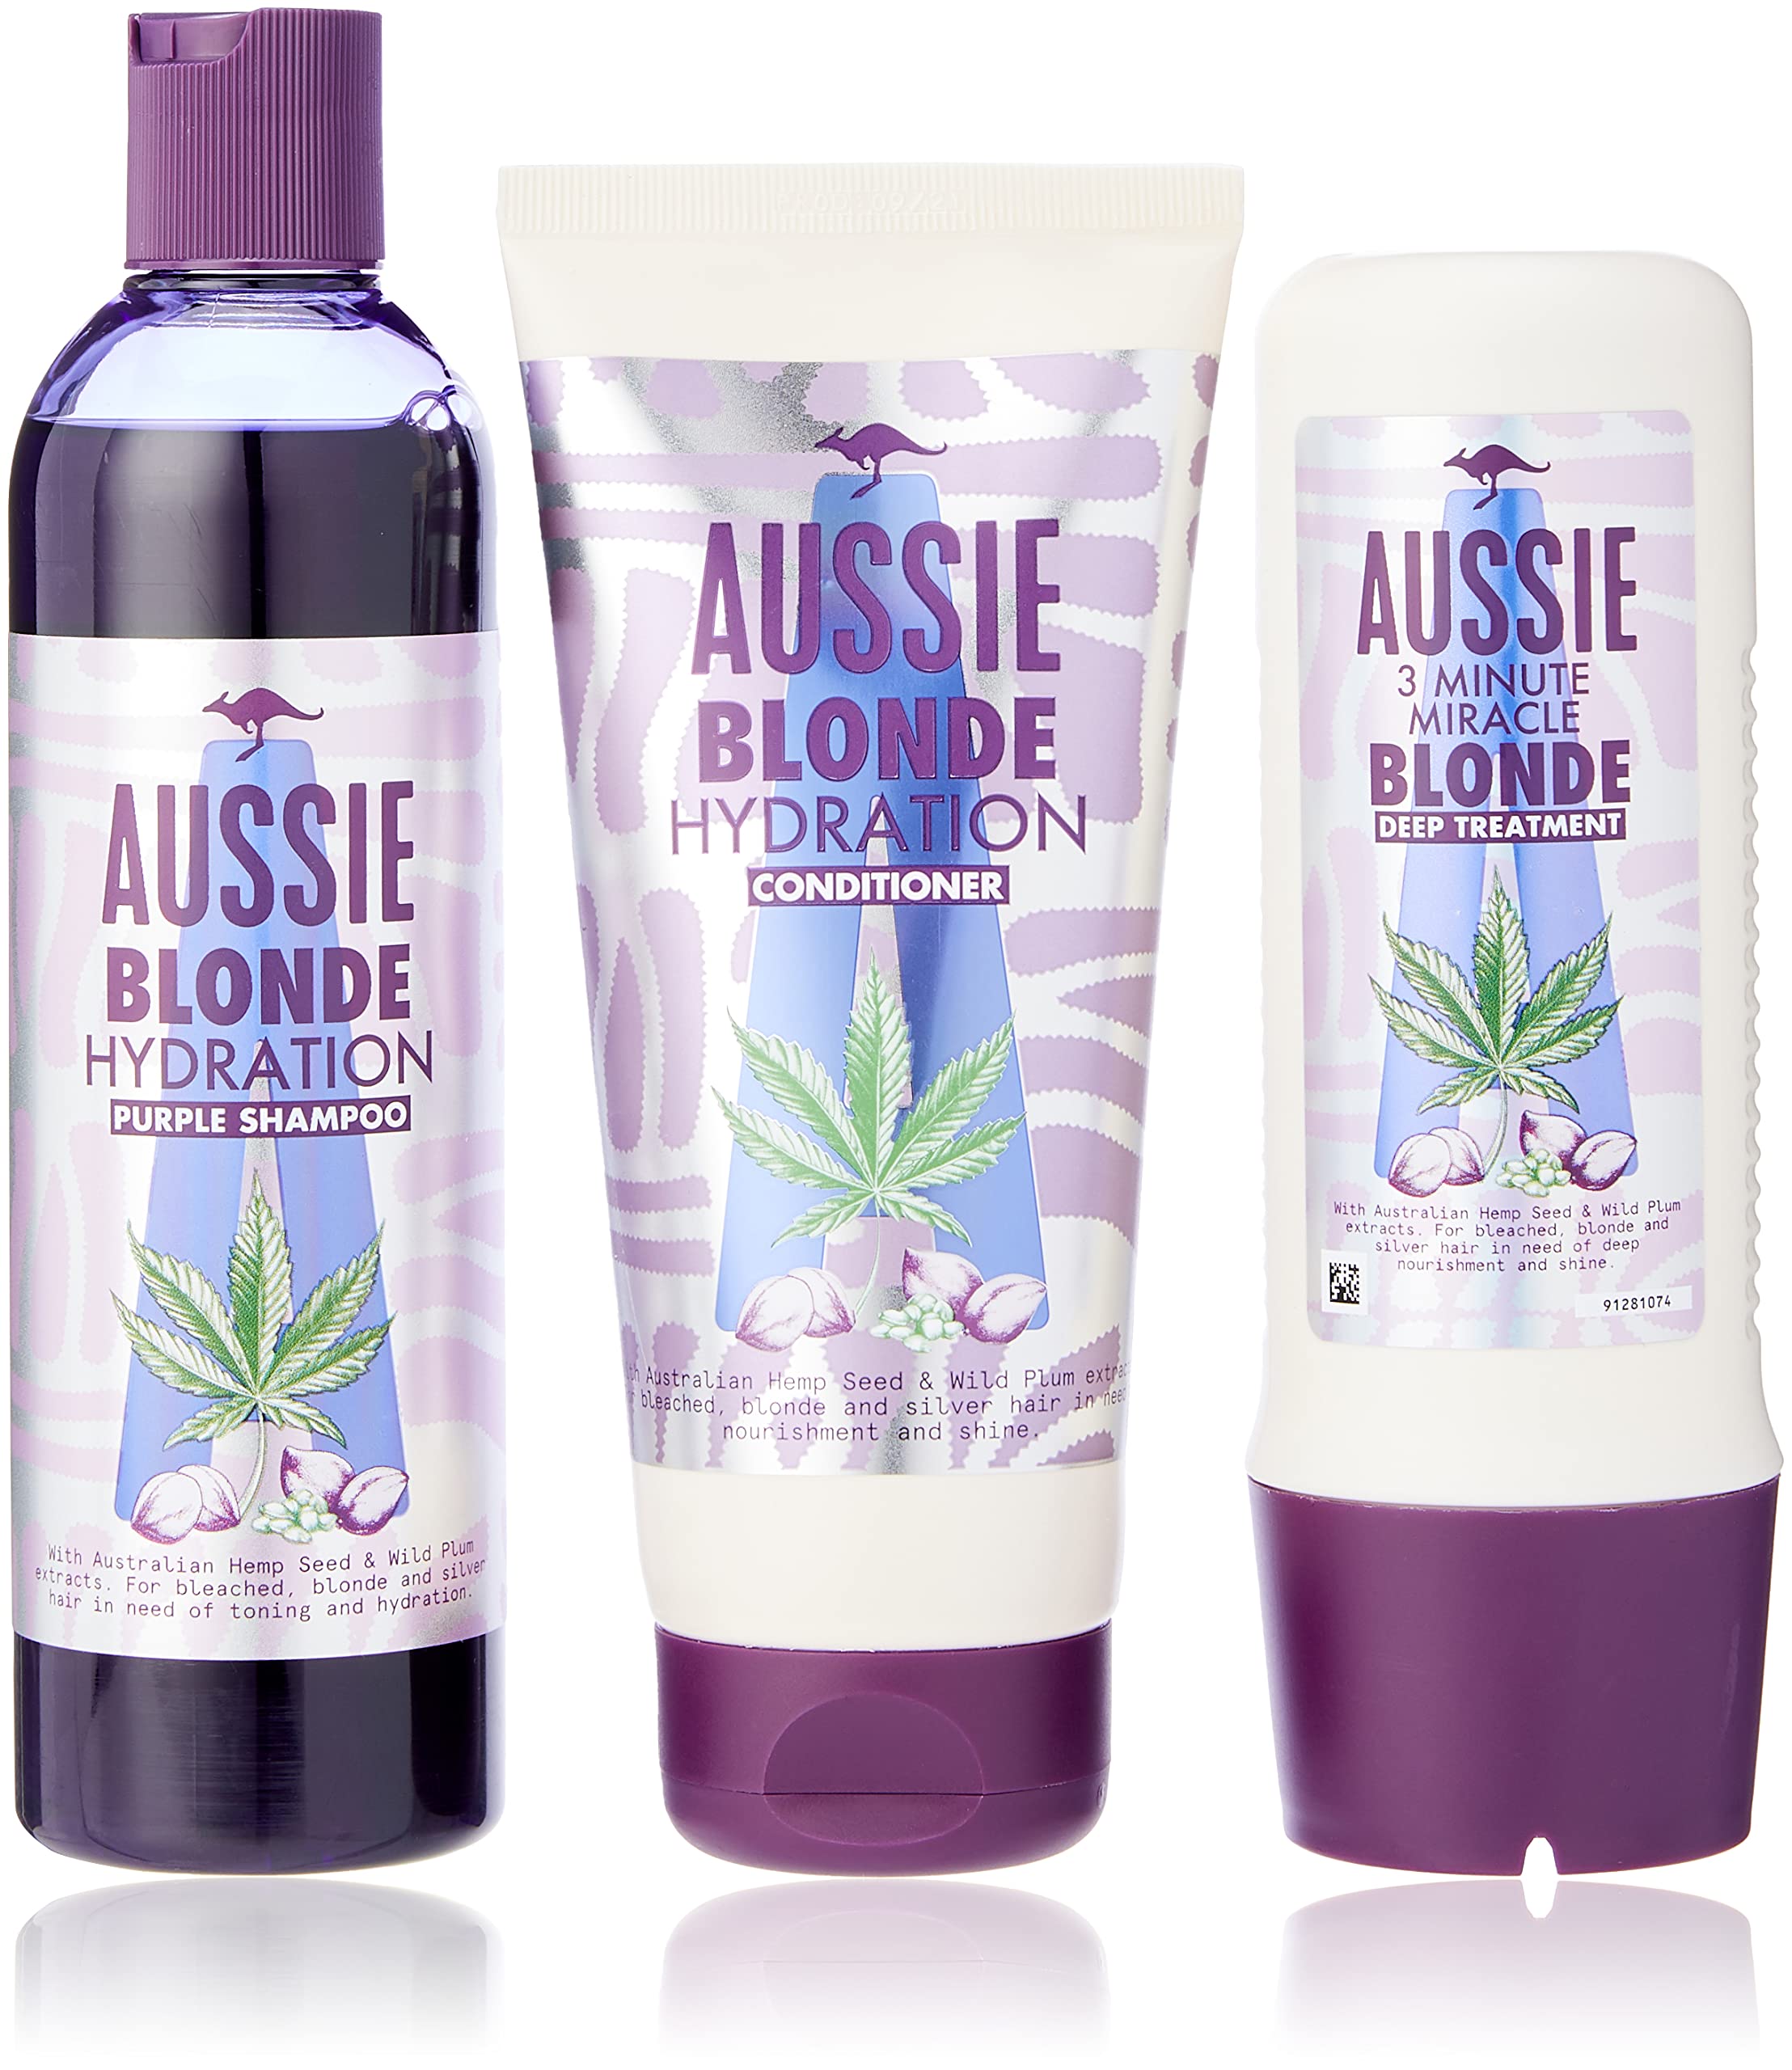 Aussie Blonde Hydration Vegan Purple Shampoo, Conditioner und 3 Minute Miracle Haarmaske Set, Blondes und Silber Haartoner-Set, neutralisiert Gelb- und Messingtöne für hydratisiertes Haar.